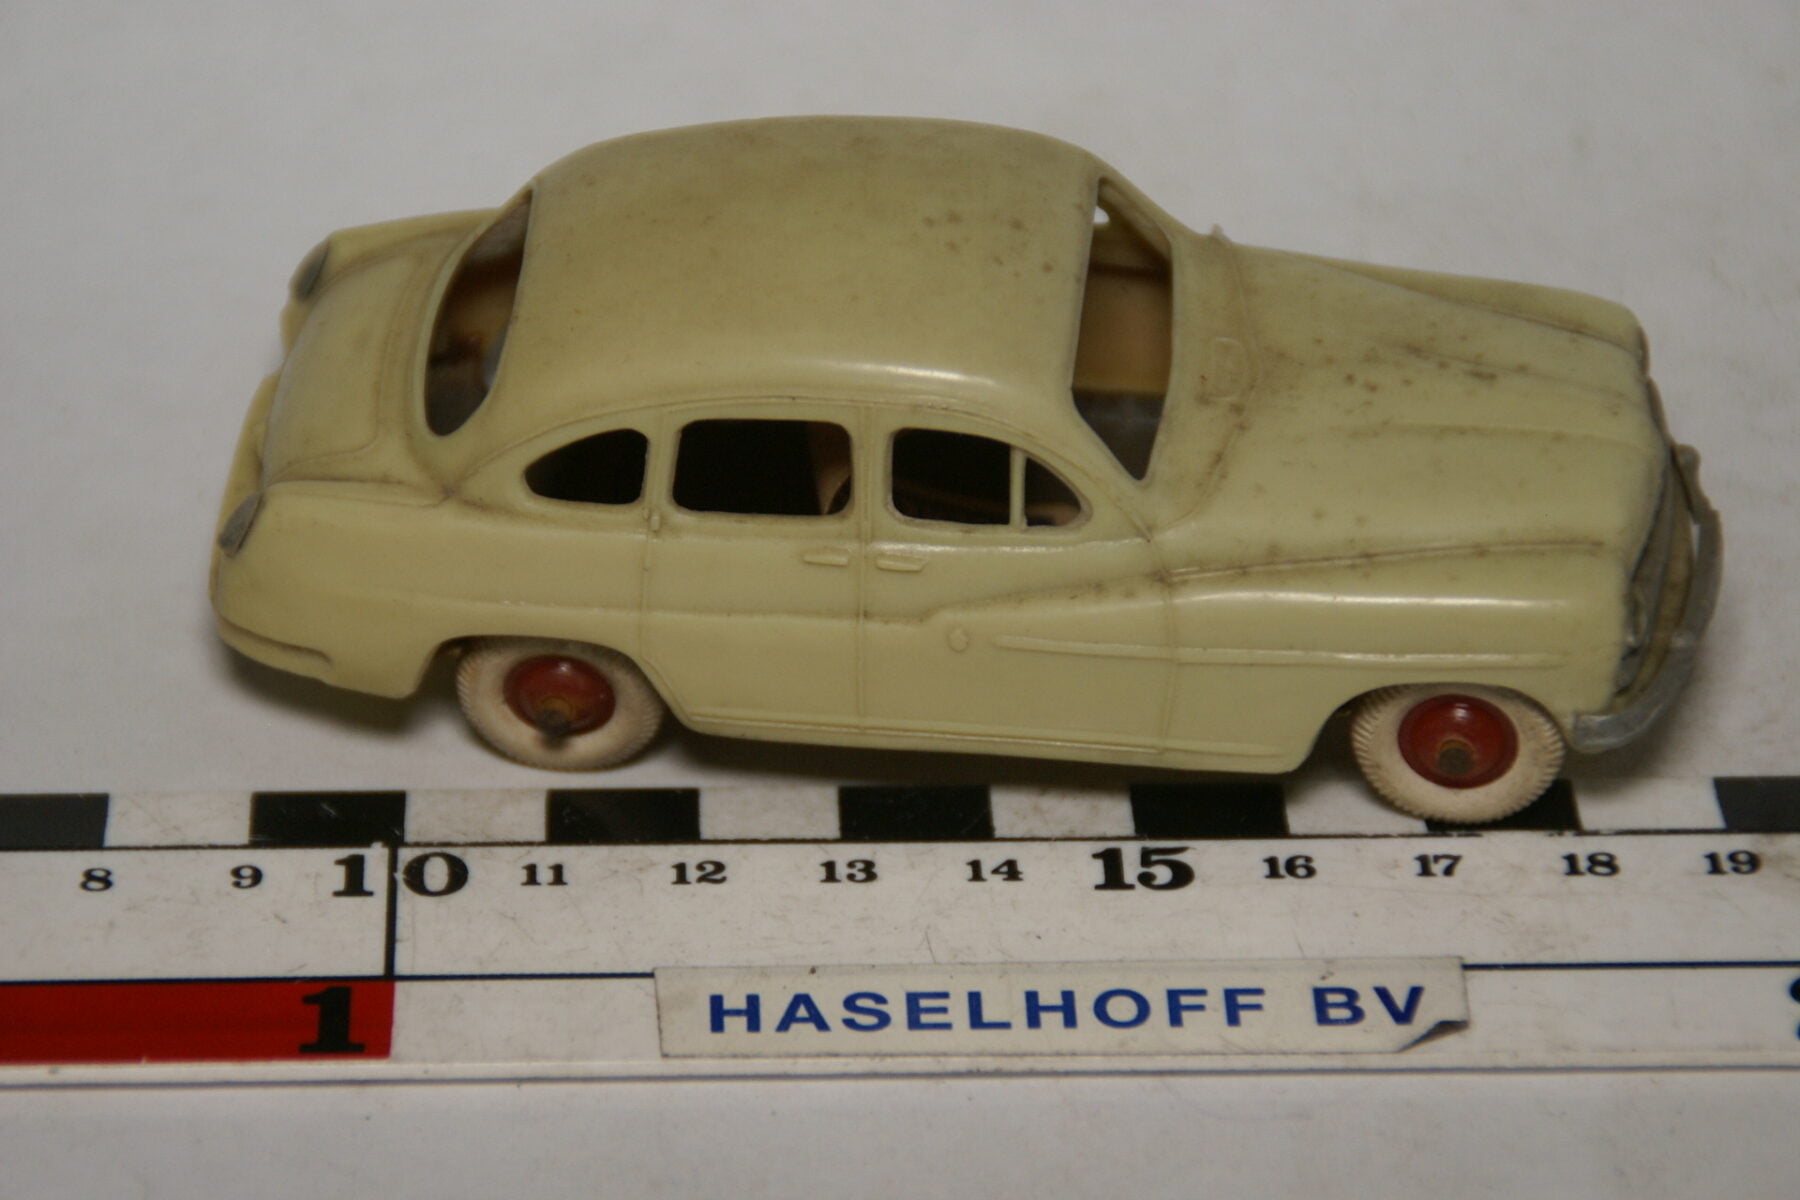 DSC07896 miniatuur 1954 Ford Vedette grijs  1op43 Norev, blikken bodem